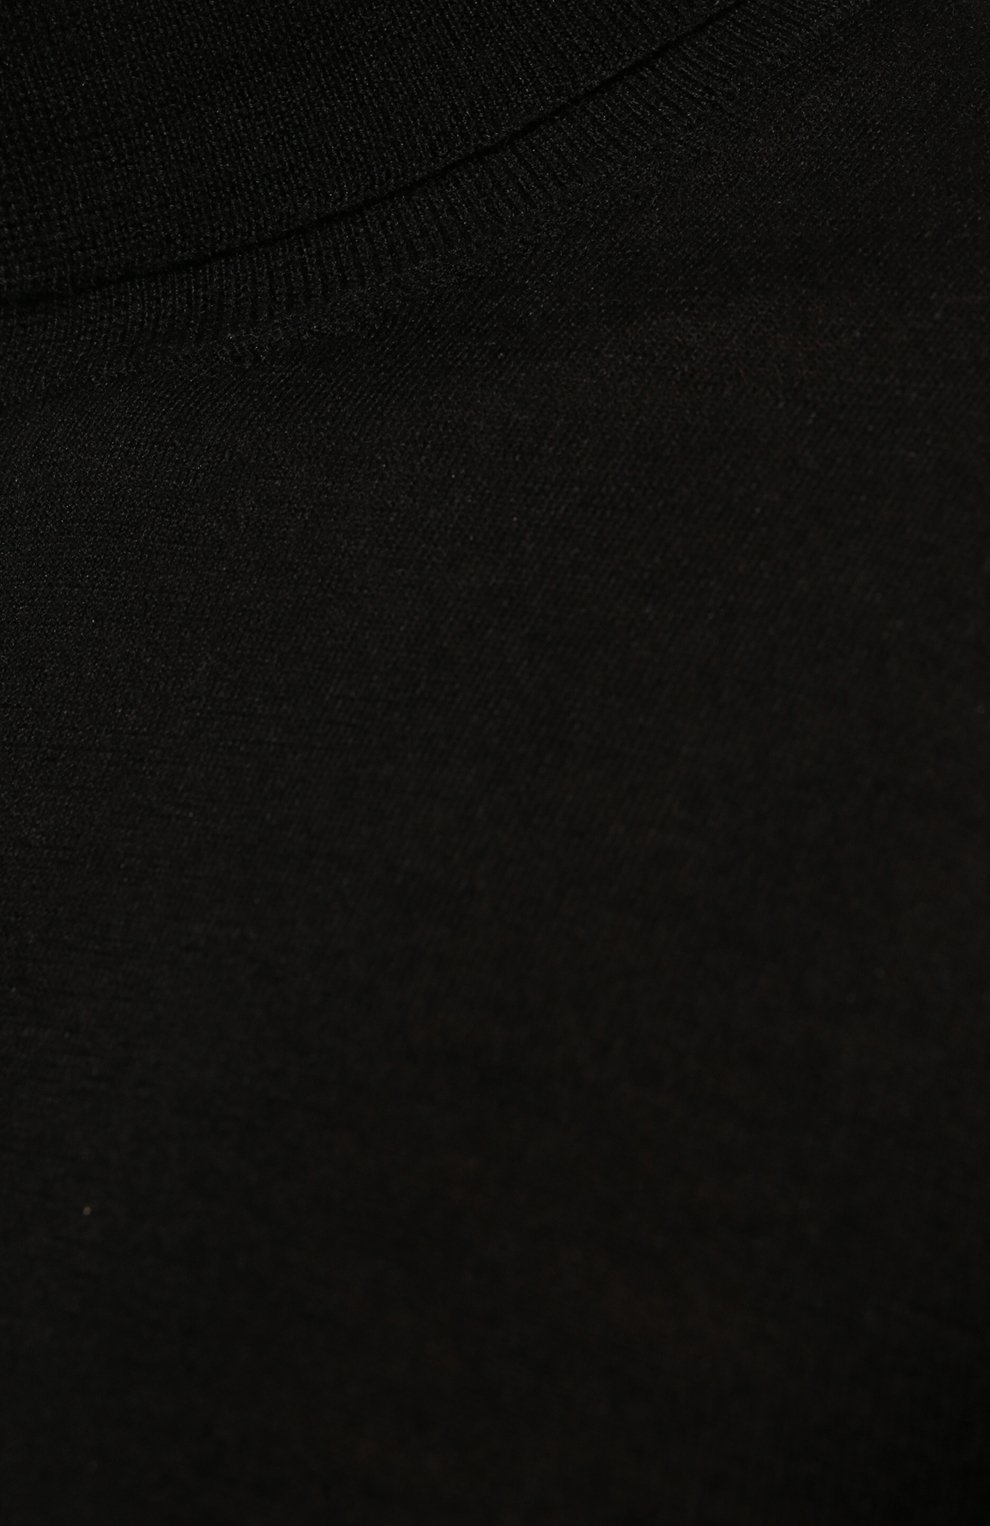 Мужской водолазка из кашемира и шелка IL BORGO CASHMERE черного цвета, арт. 55-712G0 | Фото 5 (Материал внешний: Шерсть, Шелк, Кашемир; Рукава: Длинные; Принт: Без принта; Длина (для топов): Стандартные; Мужское Кросс-КТ: Водолазка-одежда; Стили: Кэжуэл)